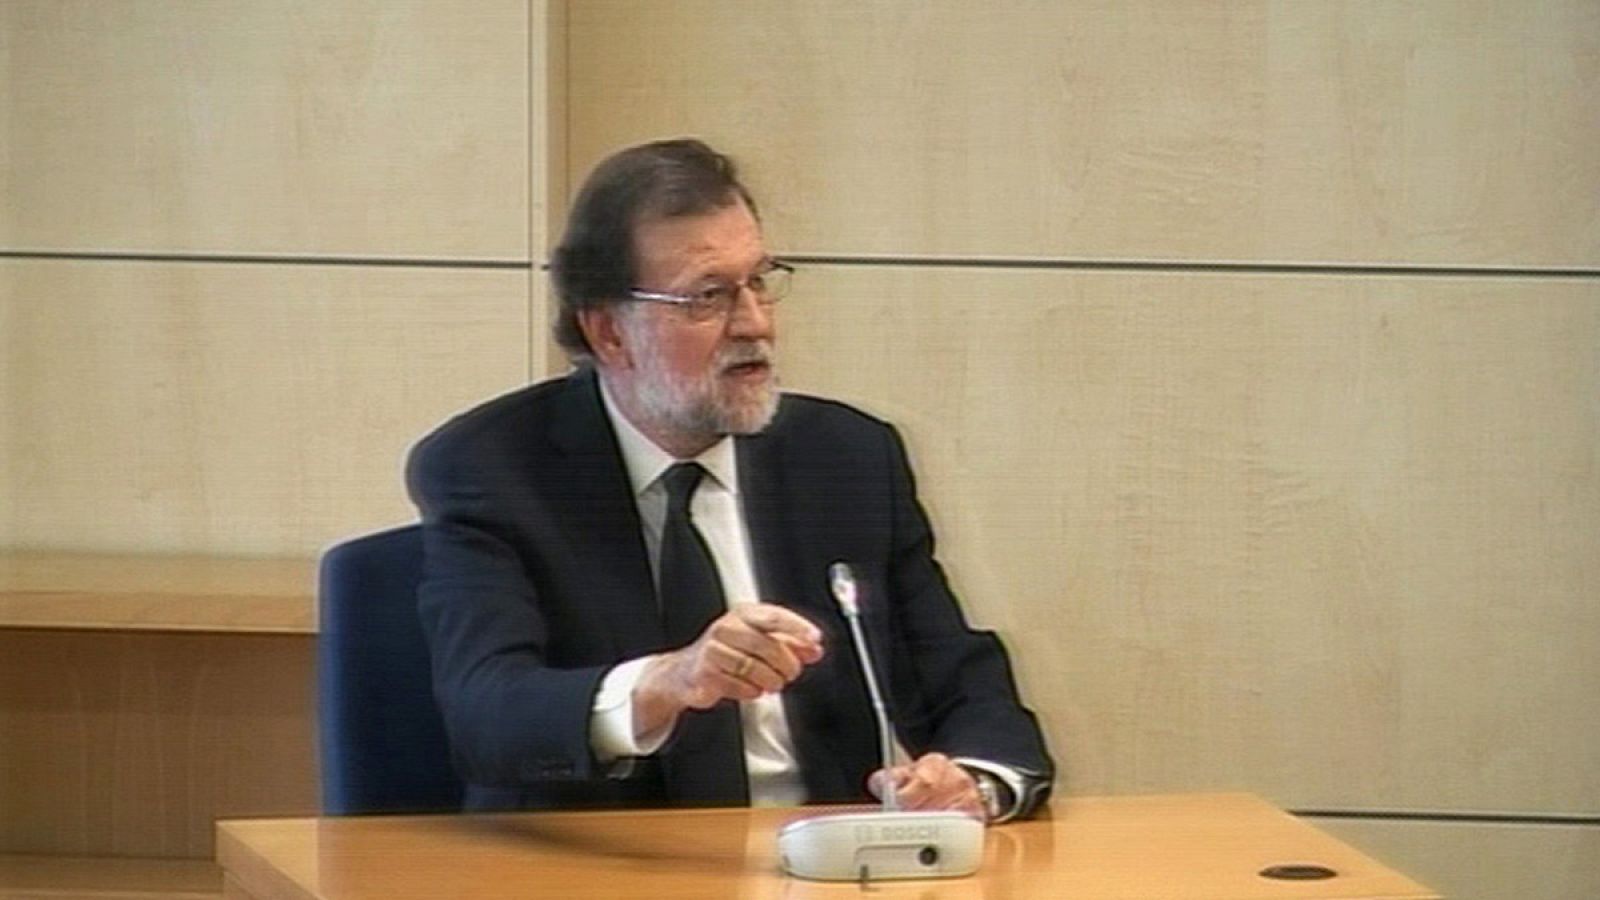 Declaración como testigo del presidente del Gobierno Mariano Rajoy en el juicio de la trama Gürtel